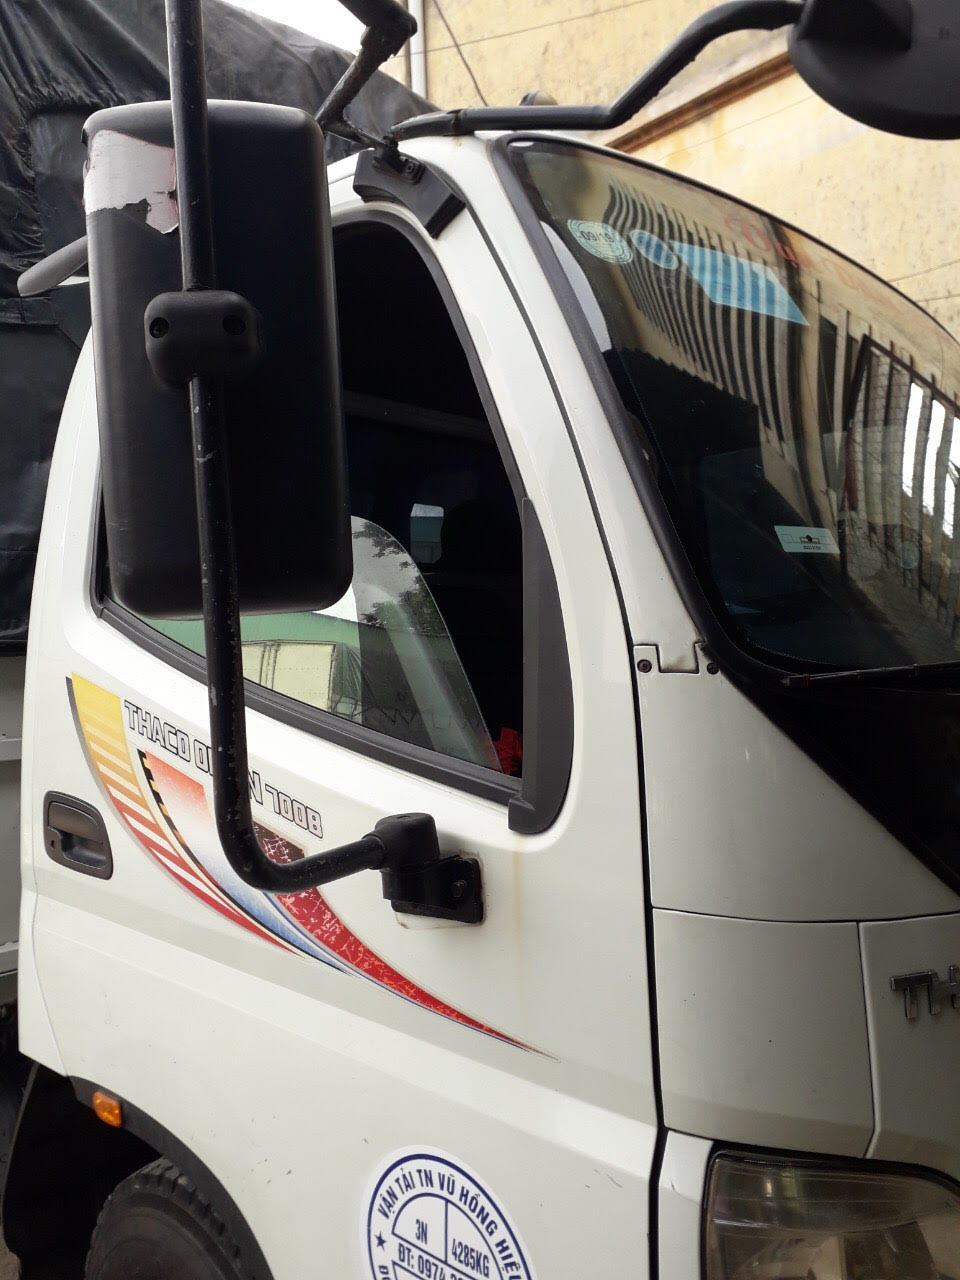 Thaco OLLIN 2015 - Bán Thaco OLLIN sản xuất 2015, màu trắng, xe nhập, giá tốt